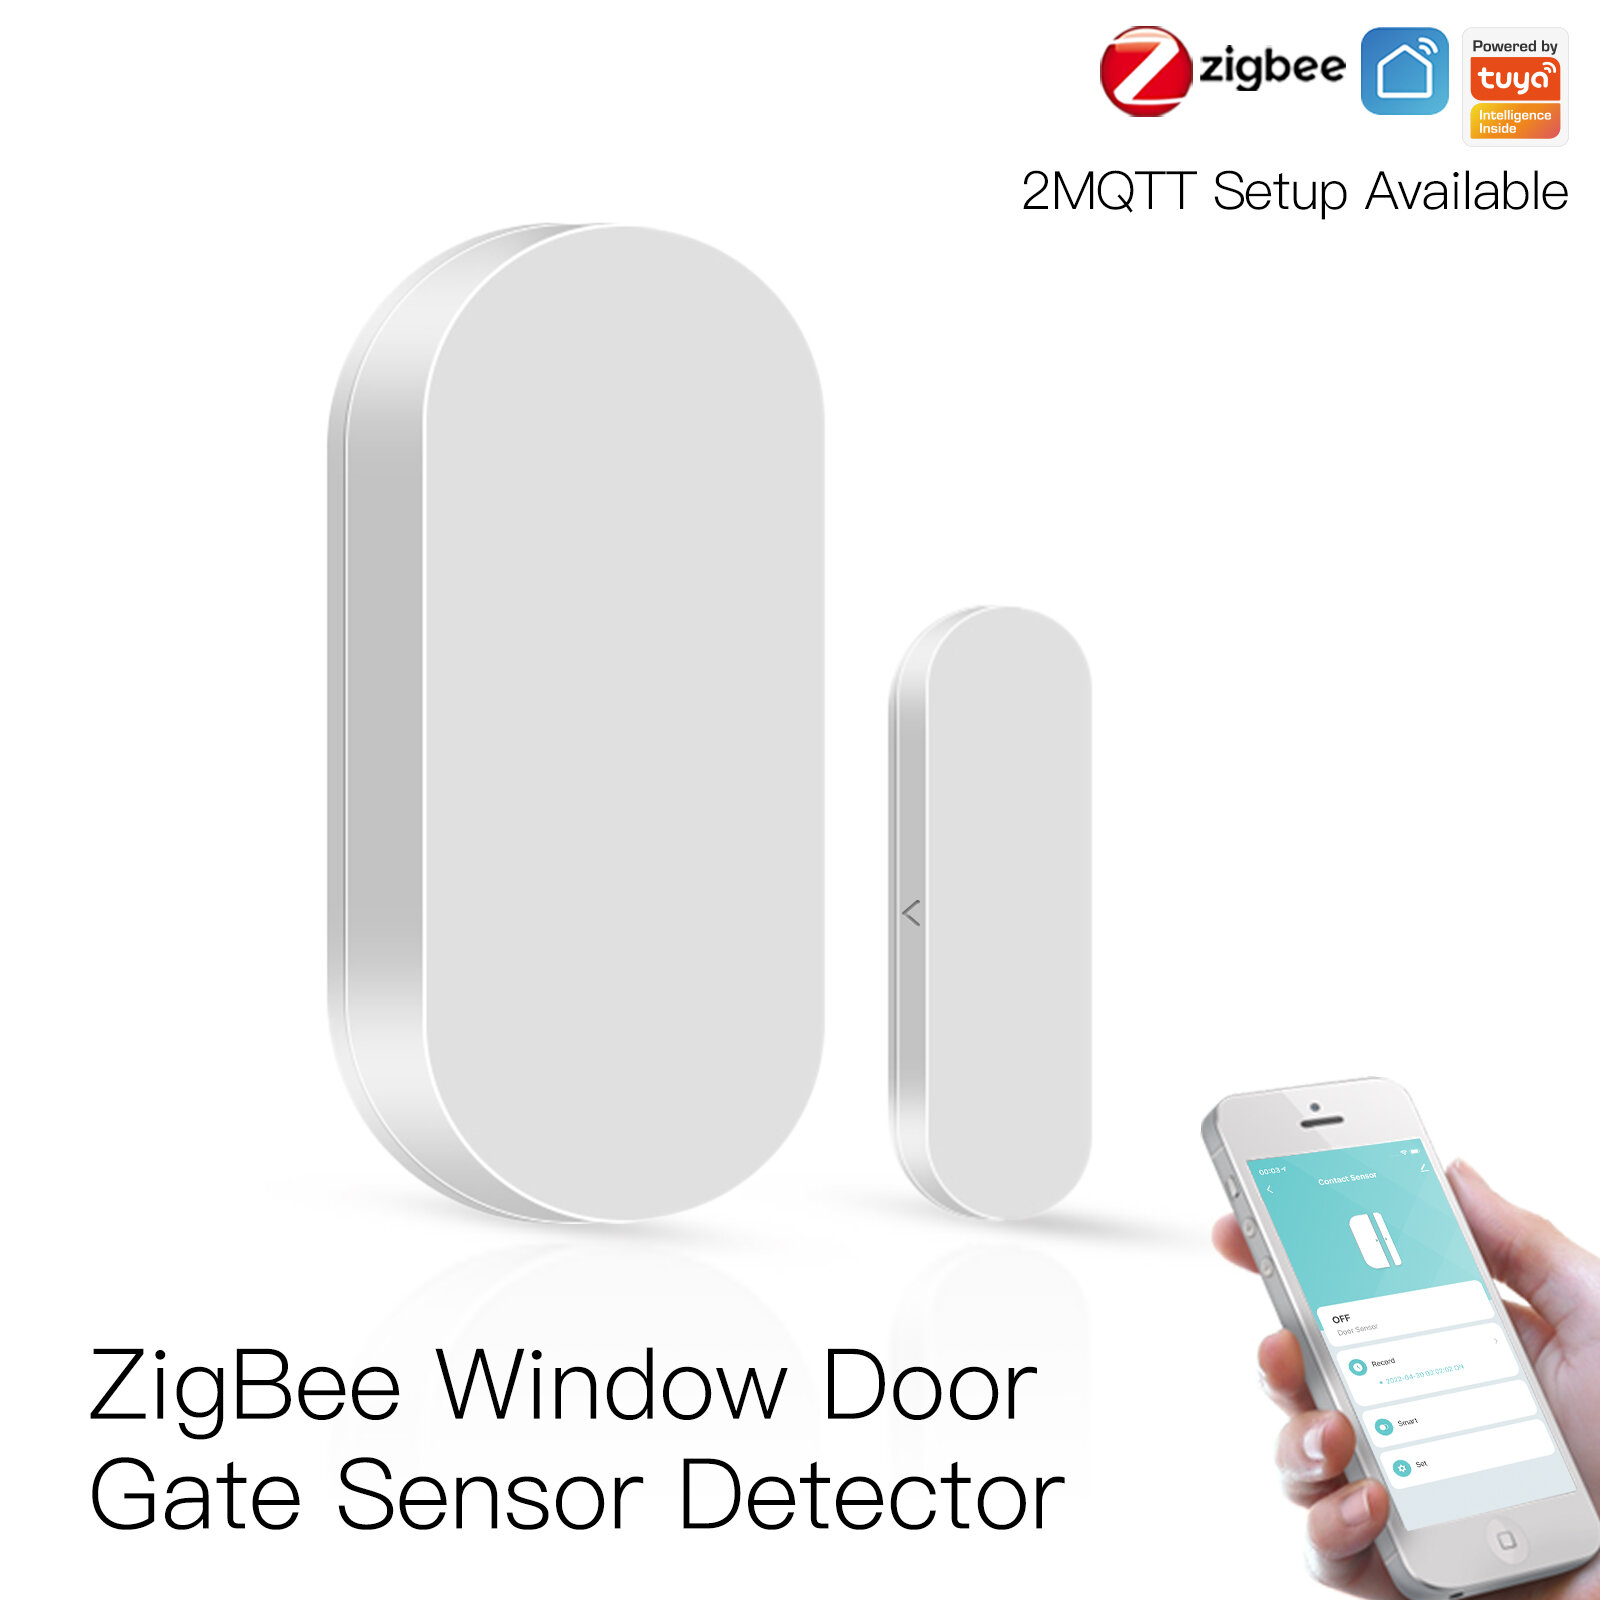 MoesHouse Tuya ZB Smart Window Door Gate Sensor Detector Smart Home Security Alarmsysteem Smart Life